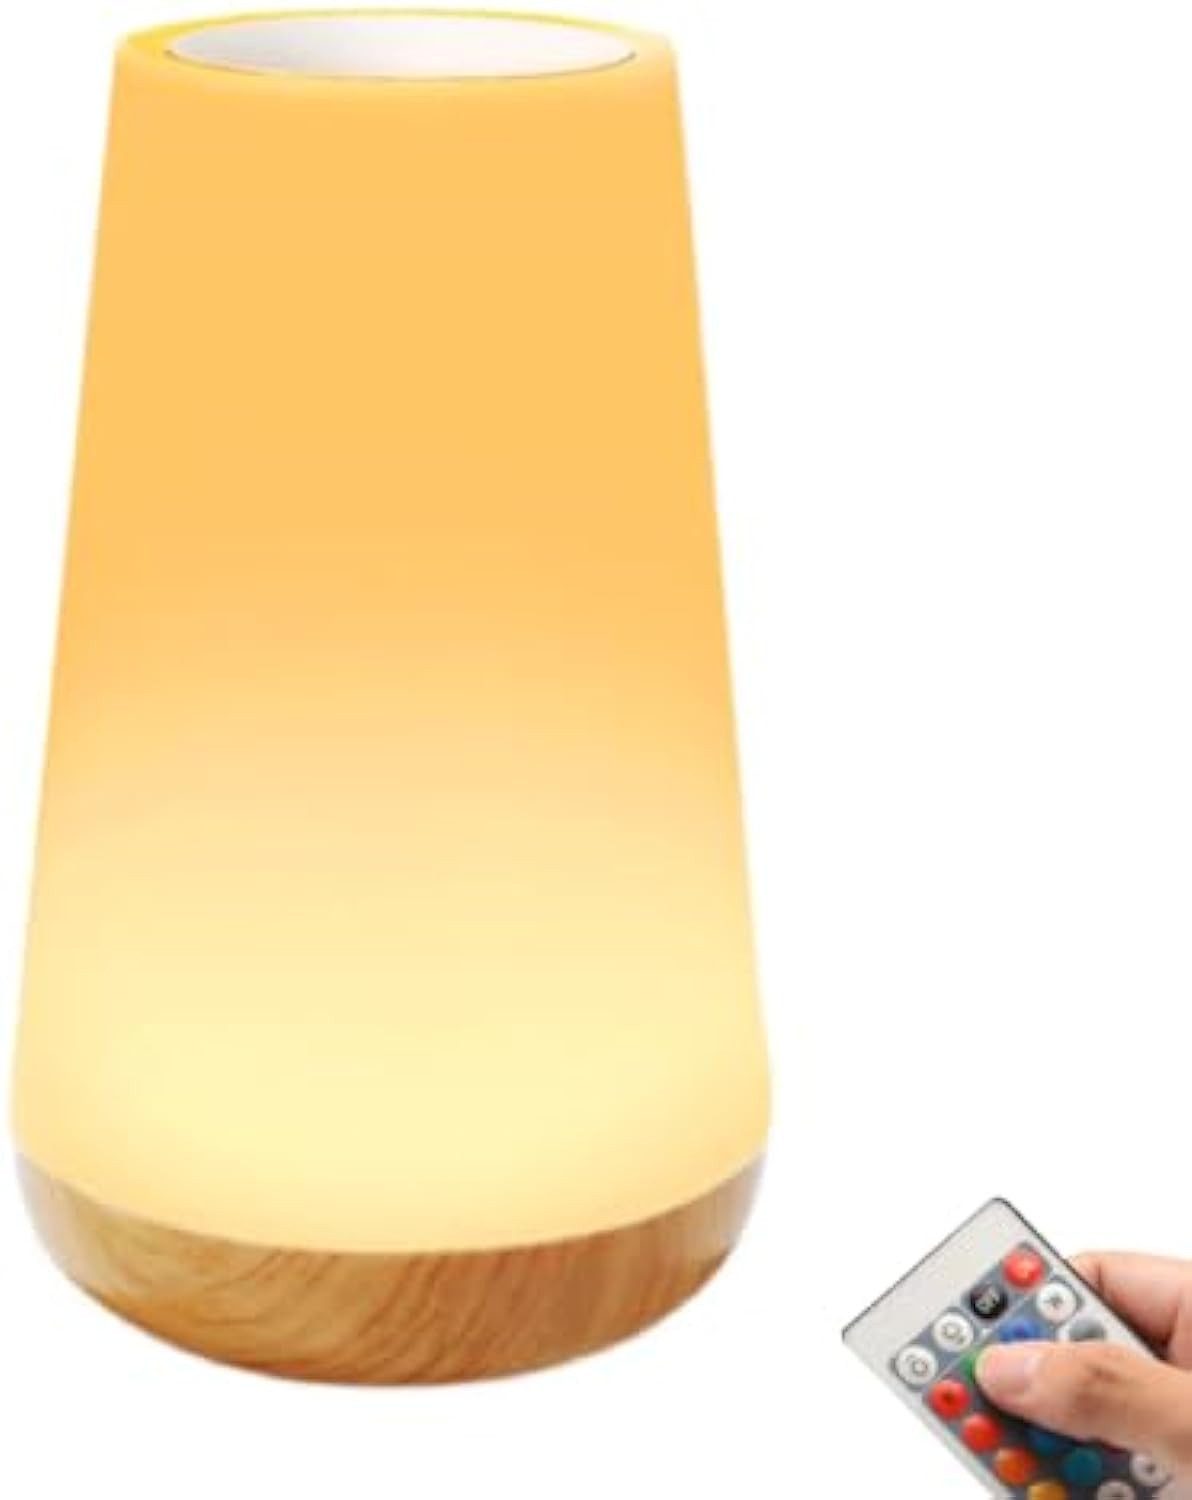 Jioson LED Nachttischlampe Tischlampen Tischleuchte RGB Touch Dimmbar Schreibtischlampe Leuchten, 13 Farbe, verstellbar, Farbwechsler, mit Fernbedienung, Farbeinstellung durch Berührung 3 Modi 5-stufiges Dimmen Zeitschaltuhr